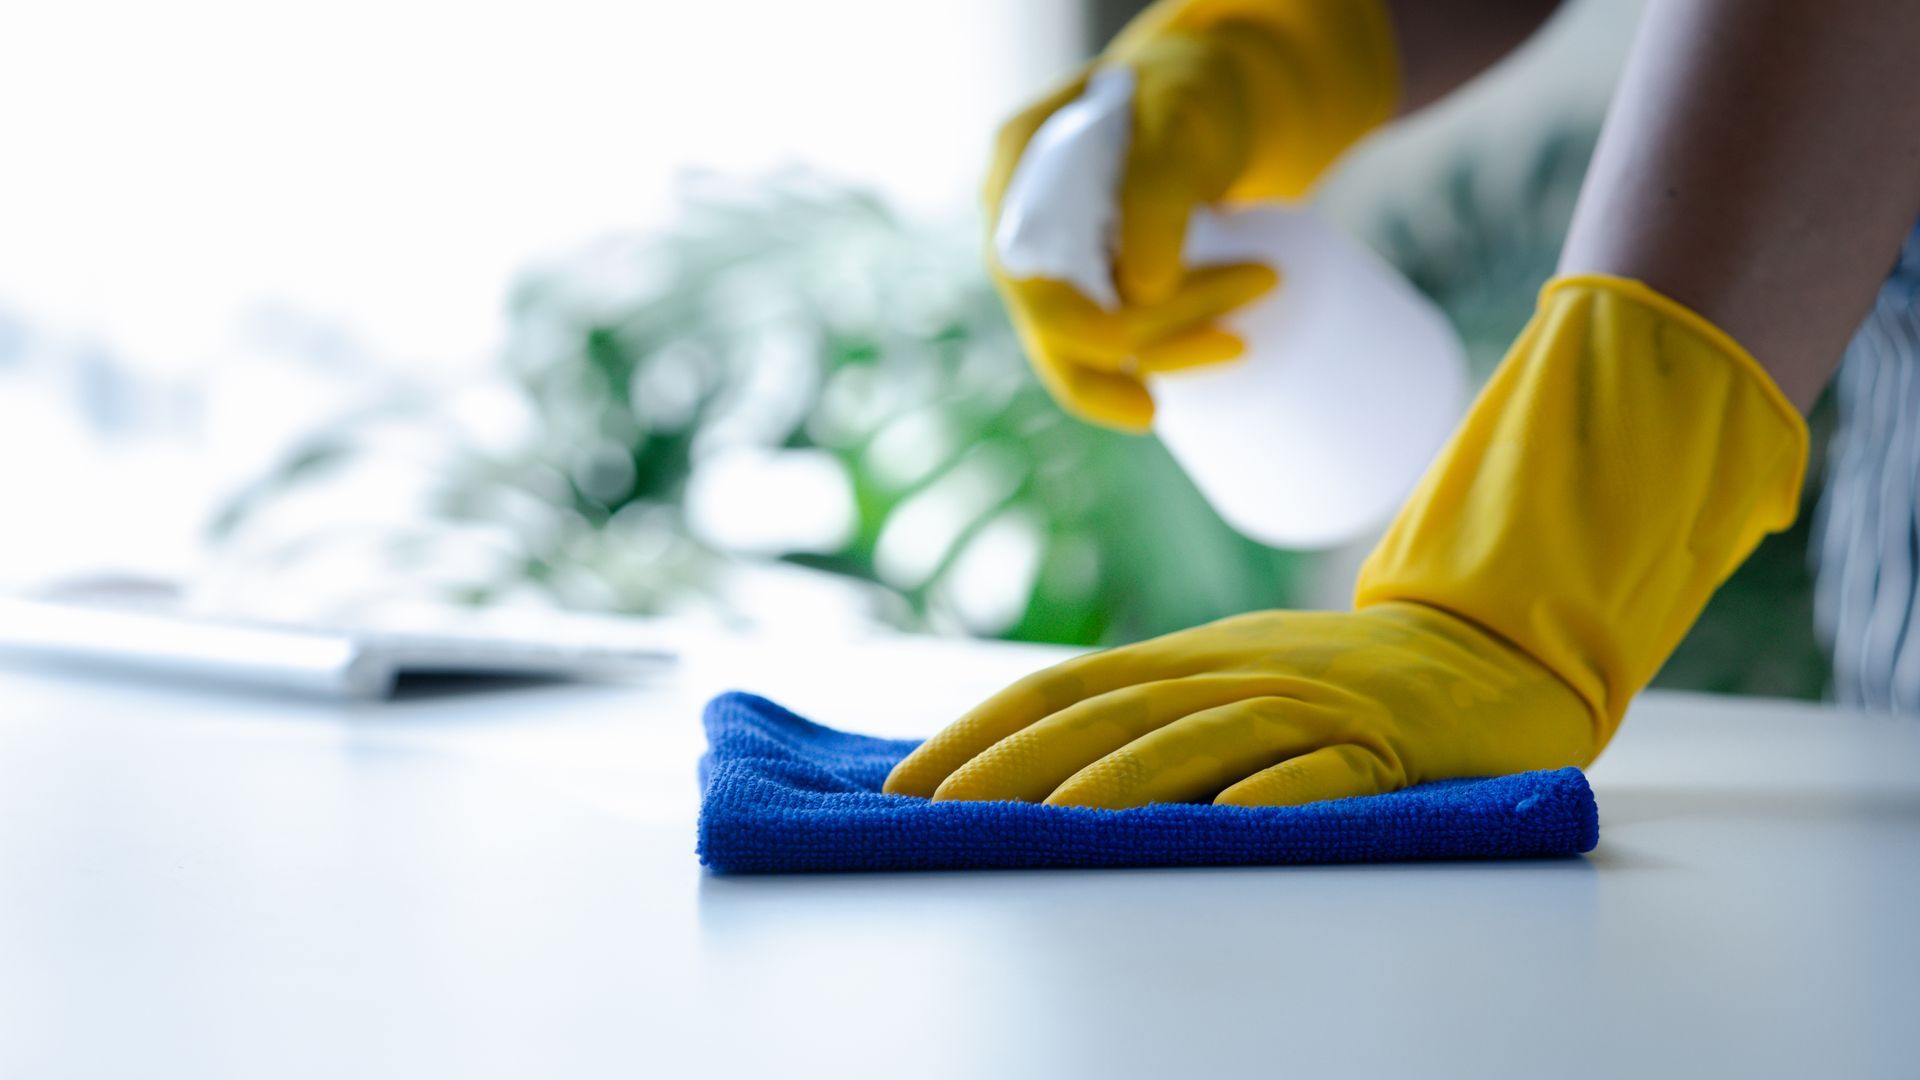 Personne en train de nettoyage surface avec paire de gants jaunes